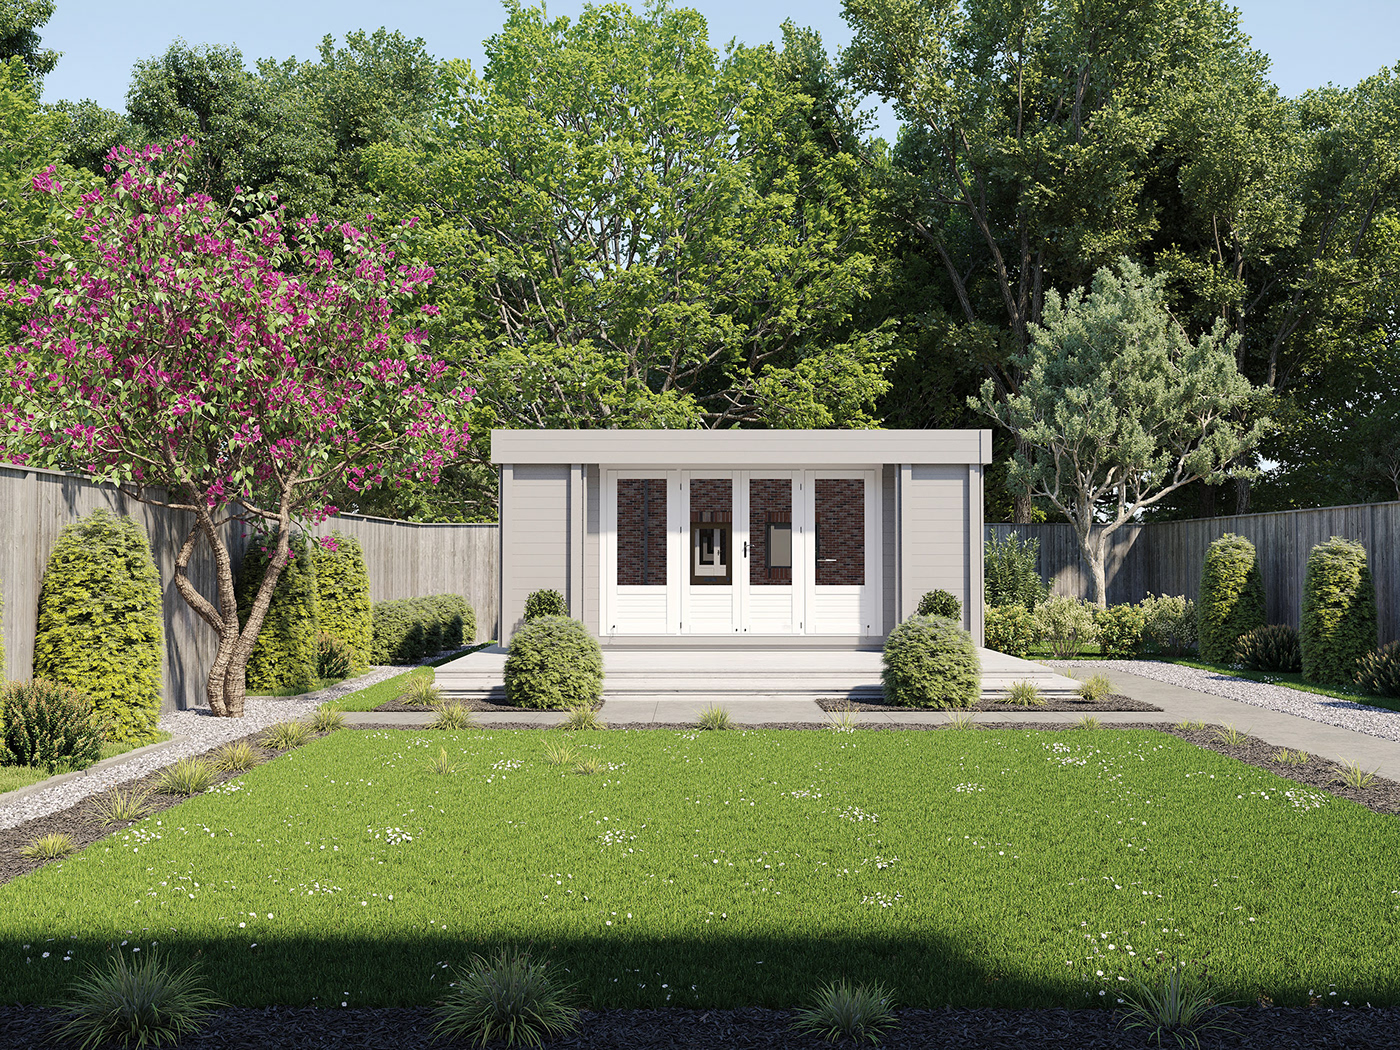 3drendering 3D Visualization garden rooms archviz CGI 3dmodeling 3DDesign Landscape Design UKgardens